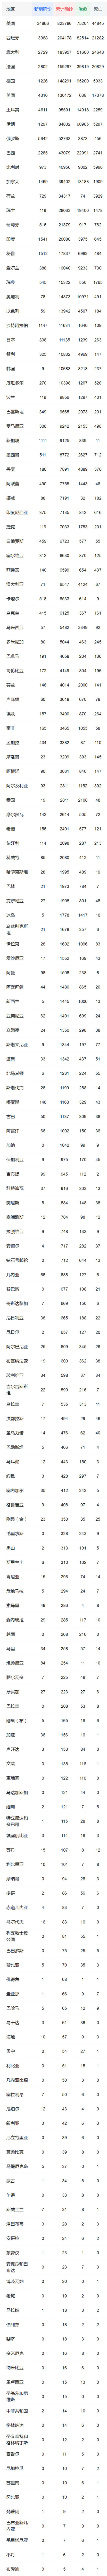 中国以外新冠肺炎确诊病例达2312966例